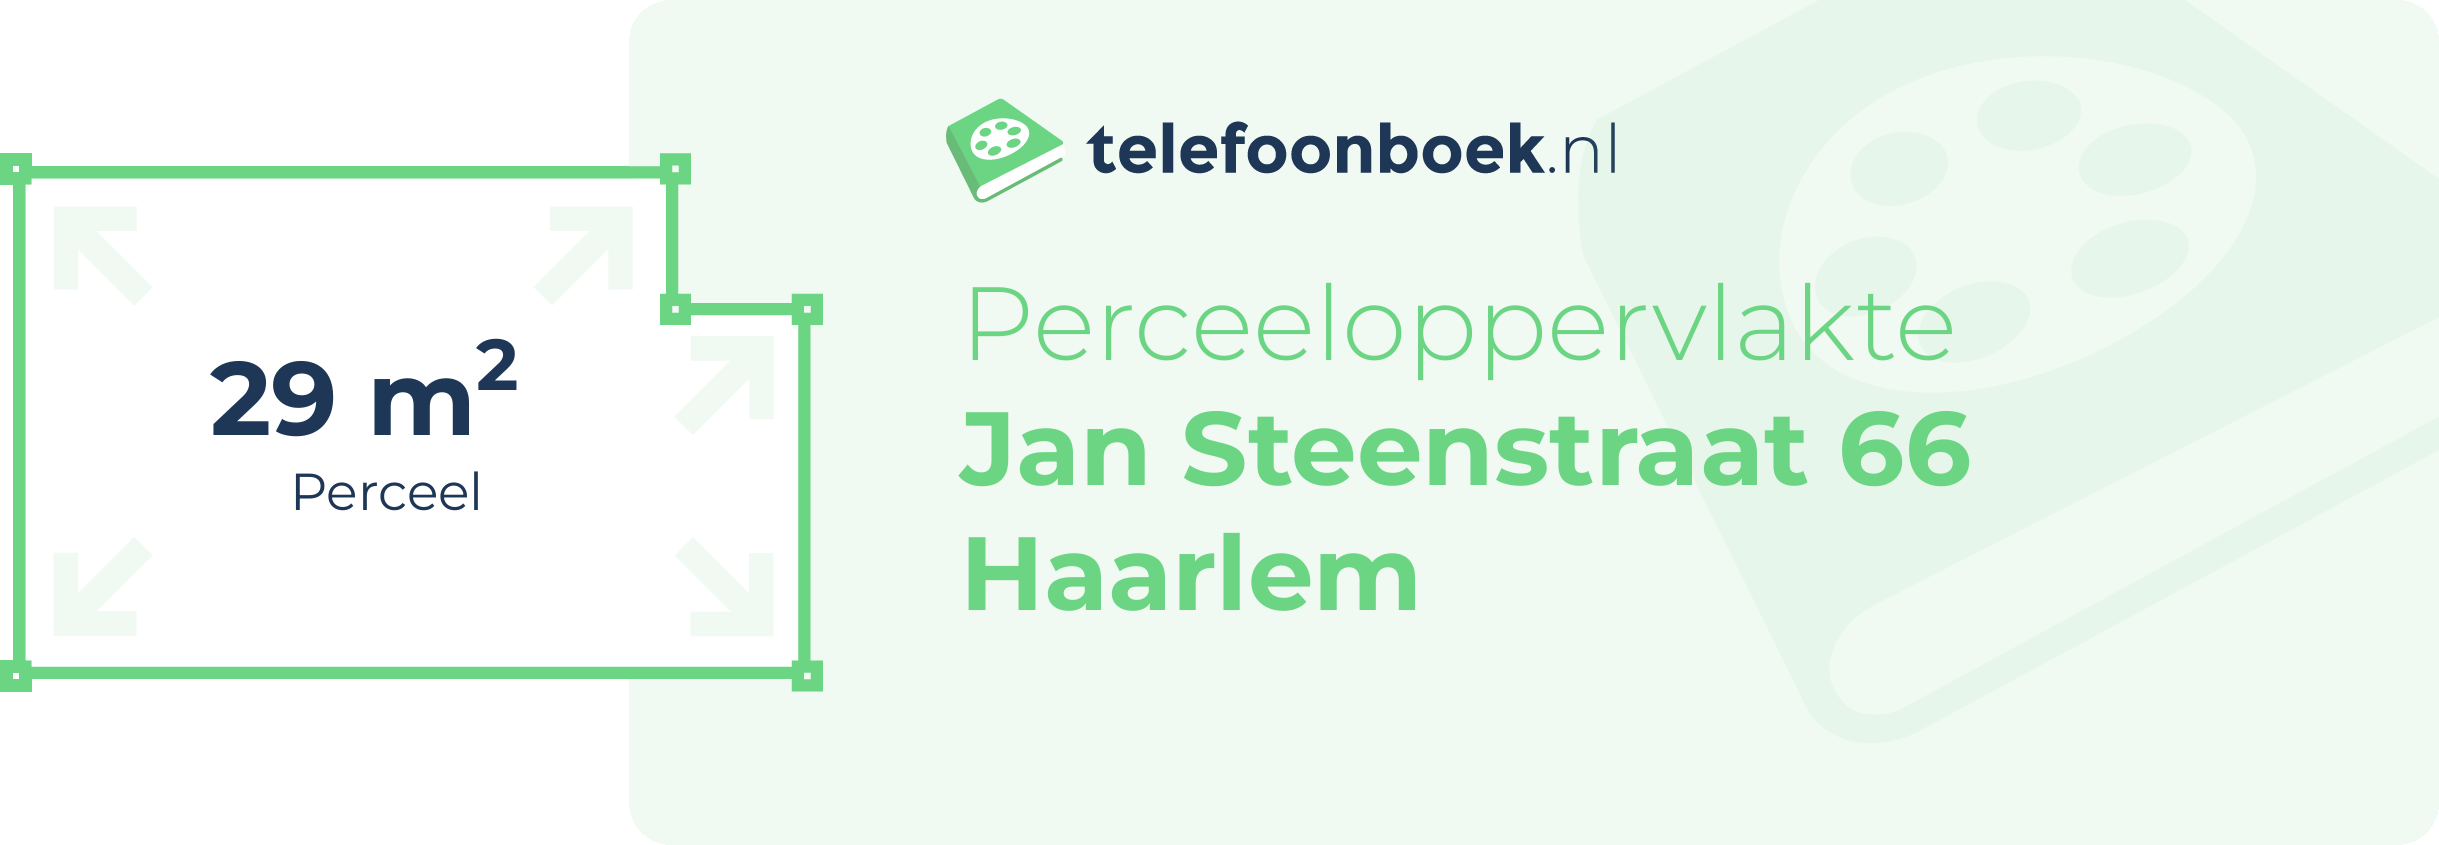 Perceeloppervlakte Jan Steenstraat 66 Haarlem